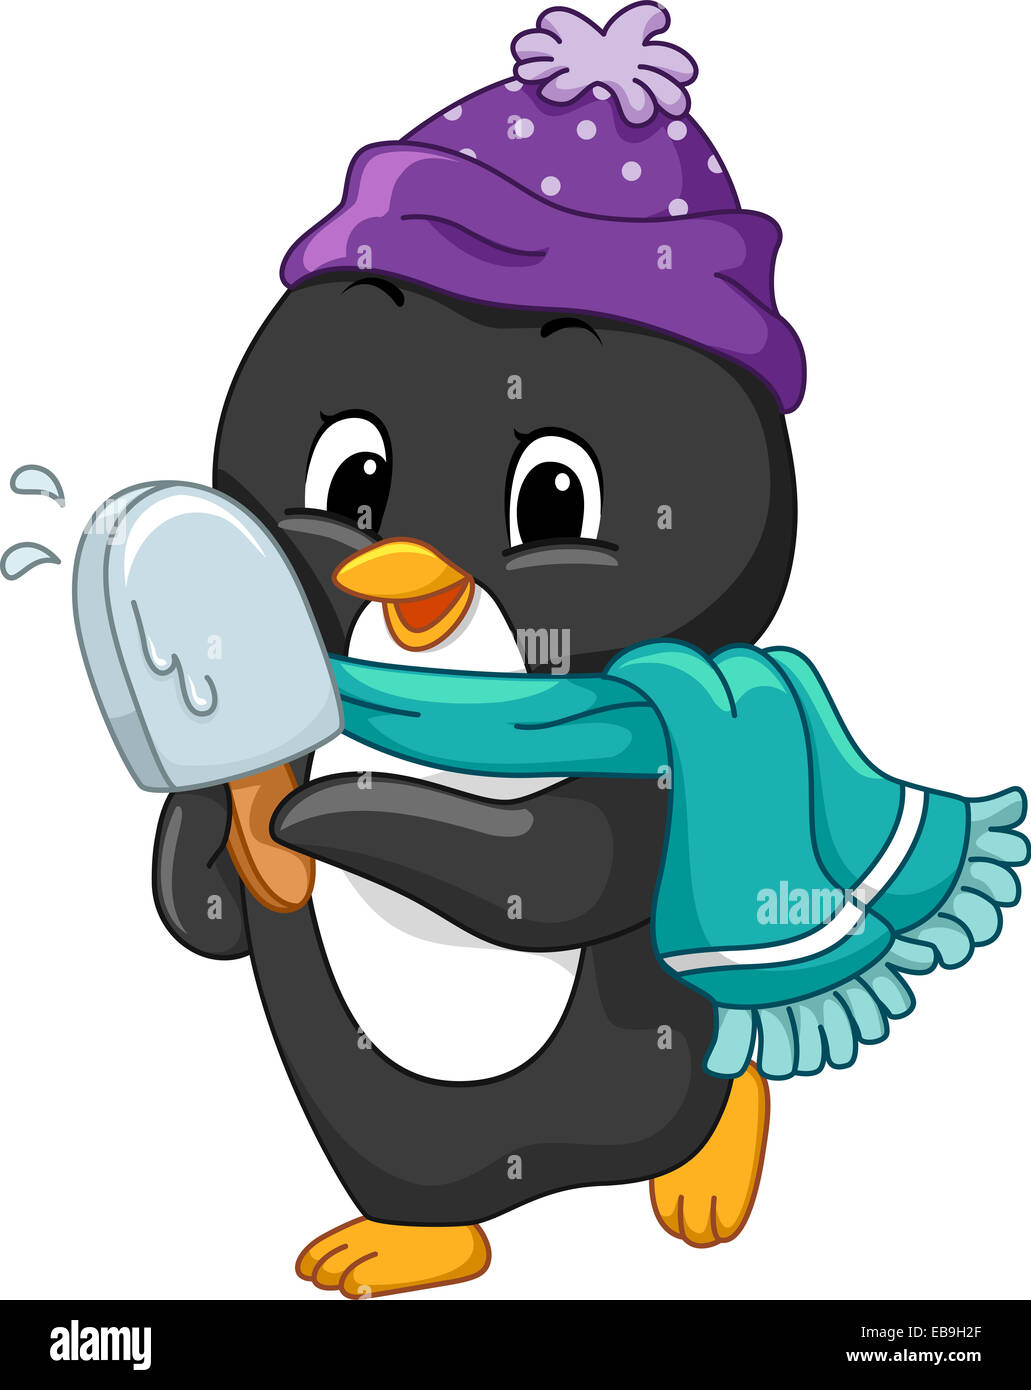 Ilustración de un pingüino sosteniendo un helado Foto de stock